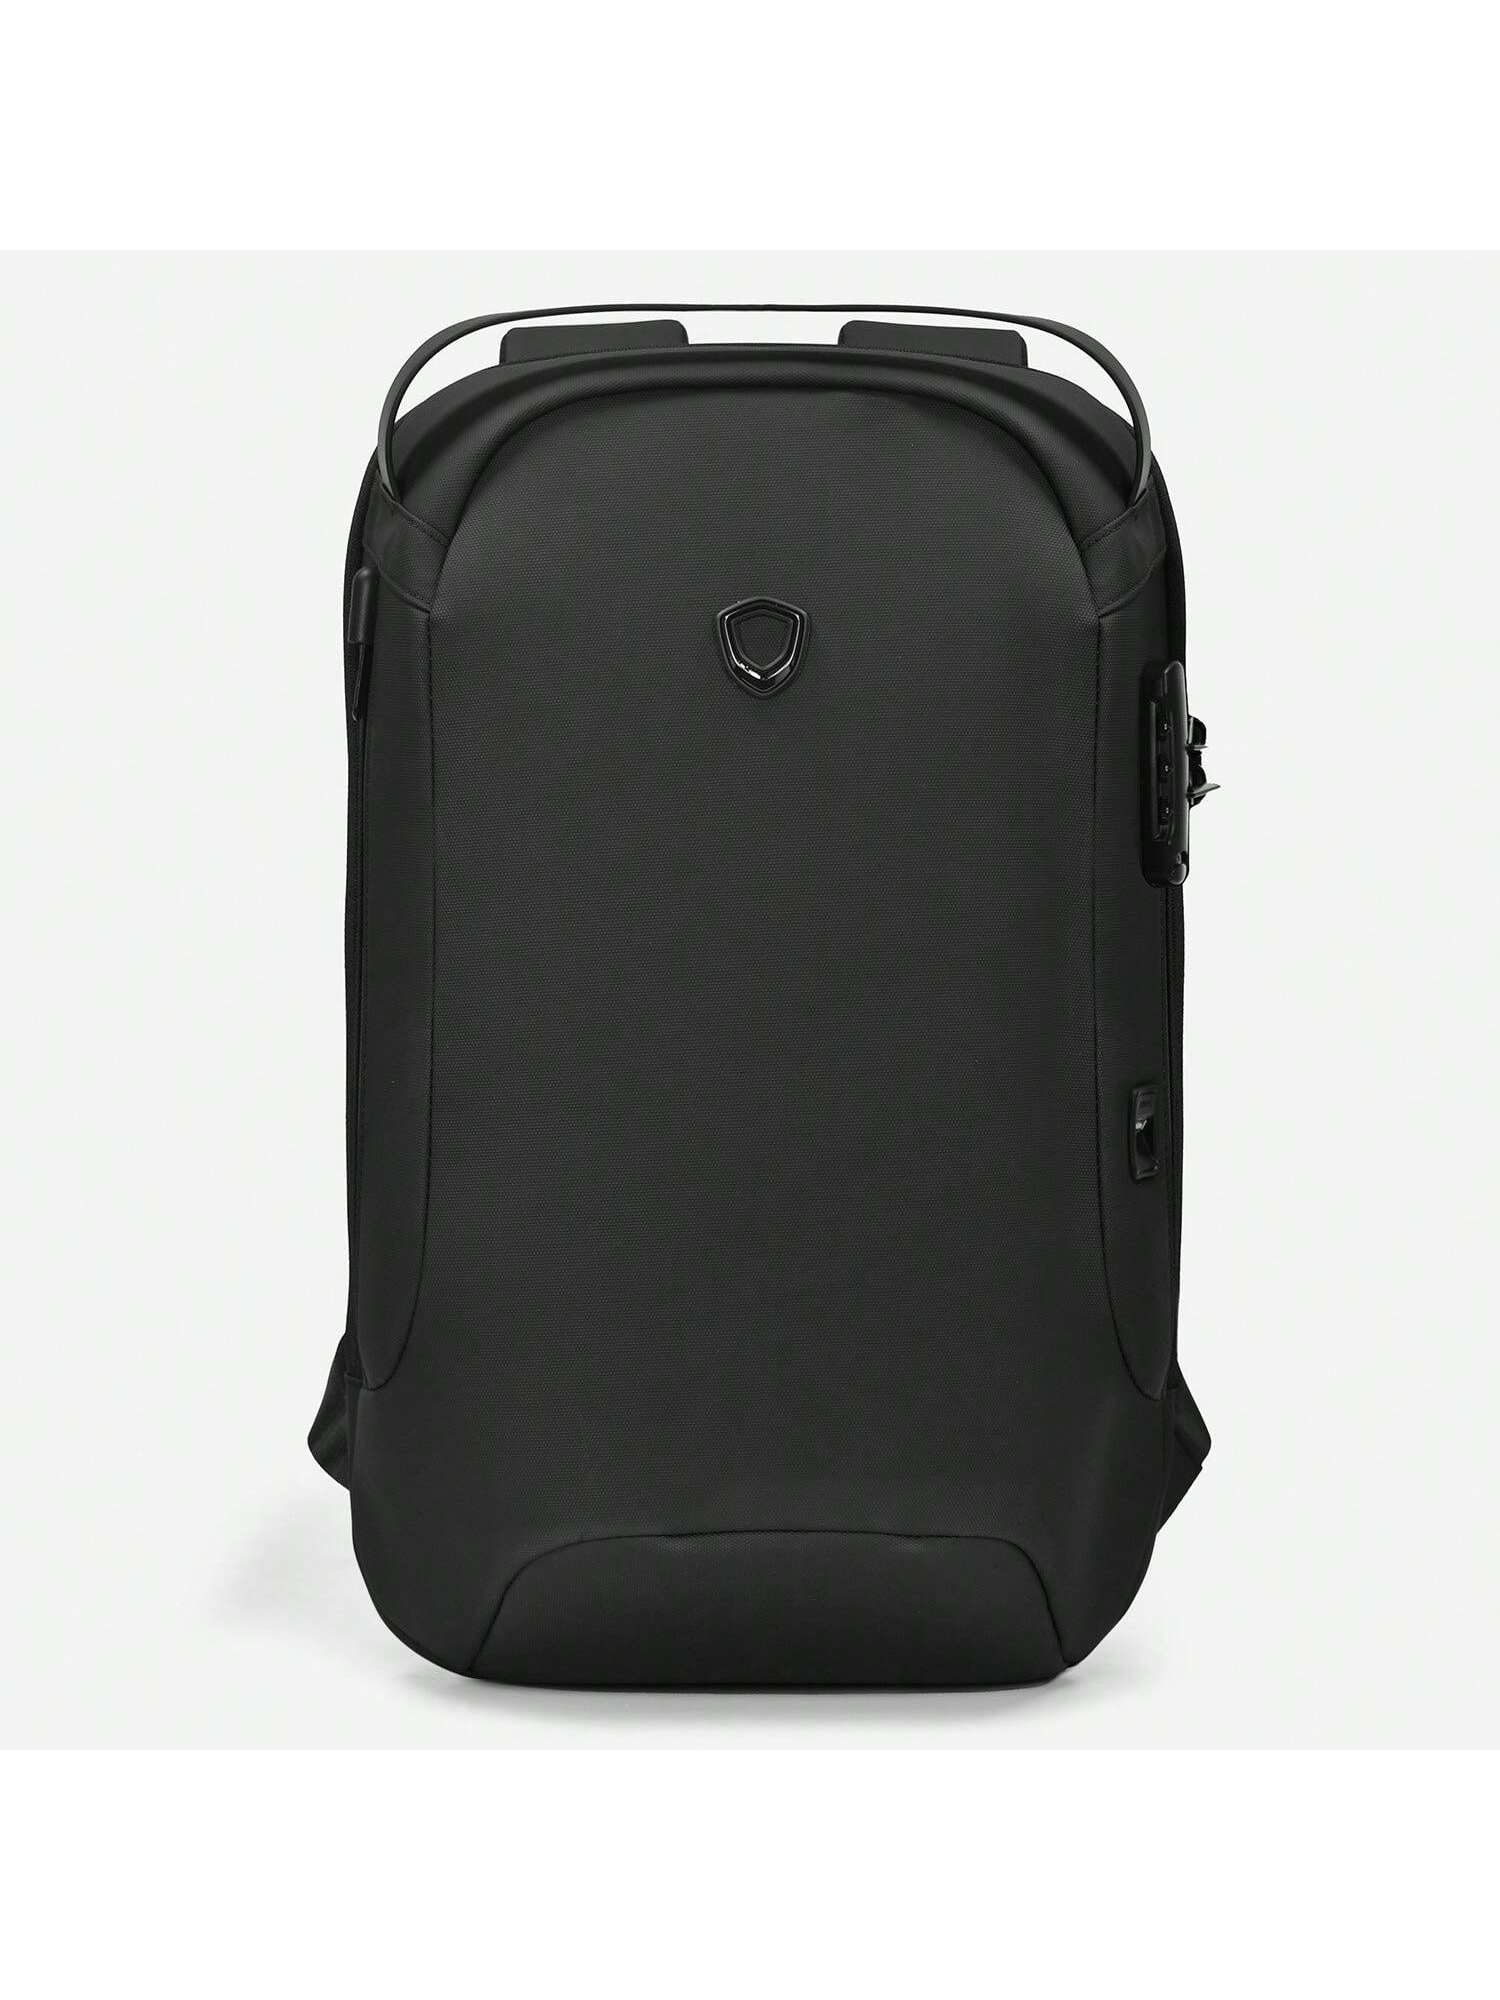 Матовый водостойкий рюкзак Frailey с USB-портом и кодовым замком, черный рюкзак валли и ева черный с usb портом 2